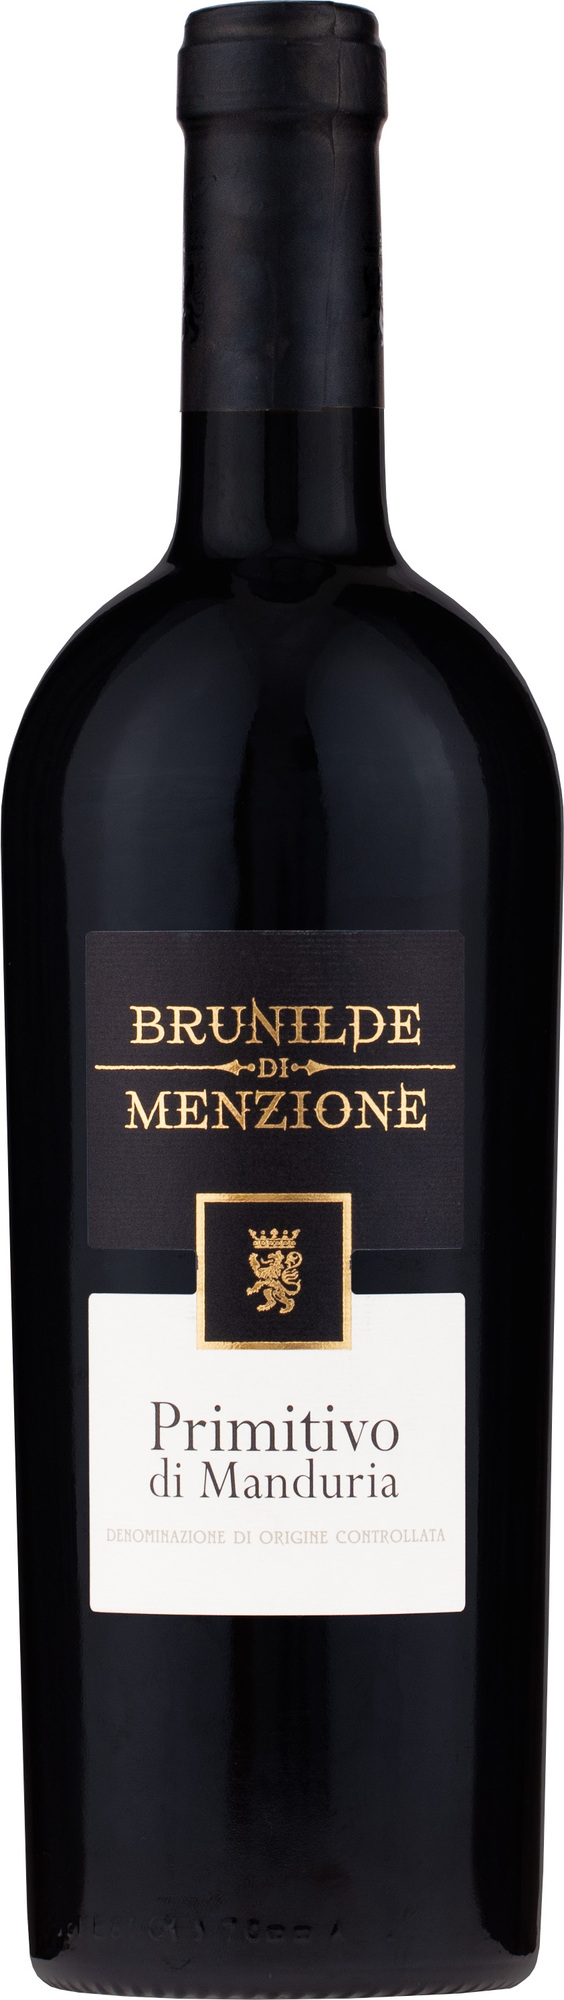 Primitivo di Manduria D.O.C. Brunilde di Menzione - Red Wine | Bondston